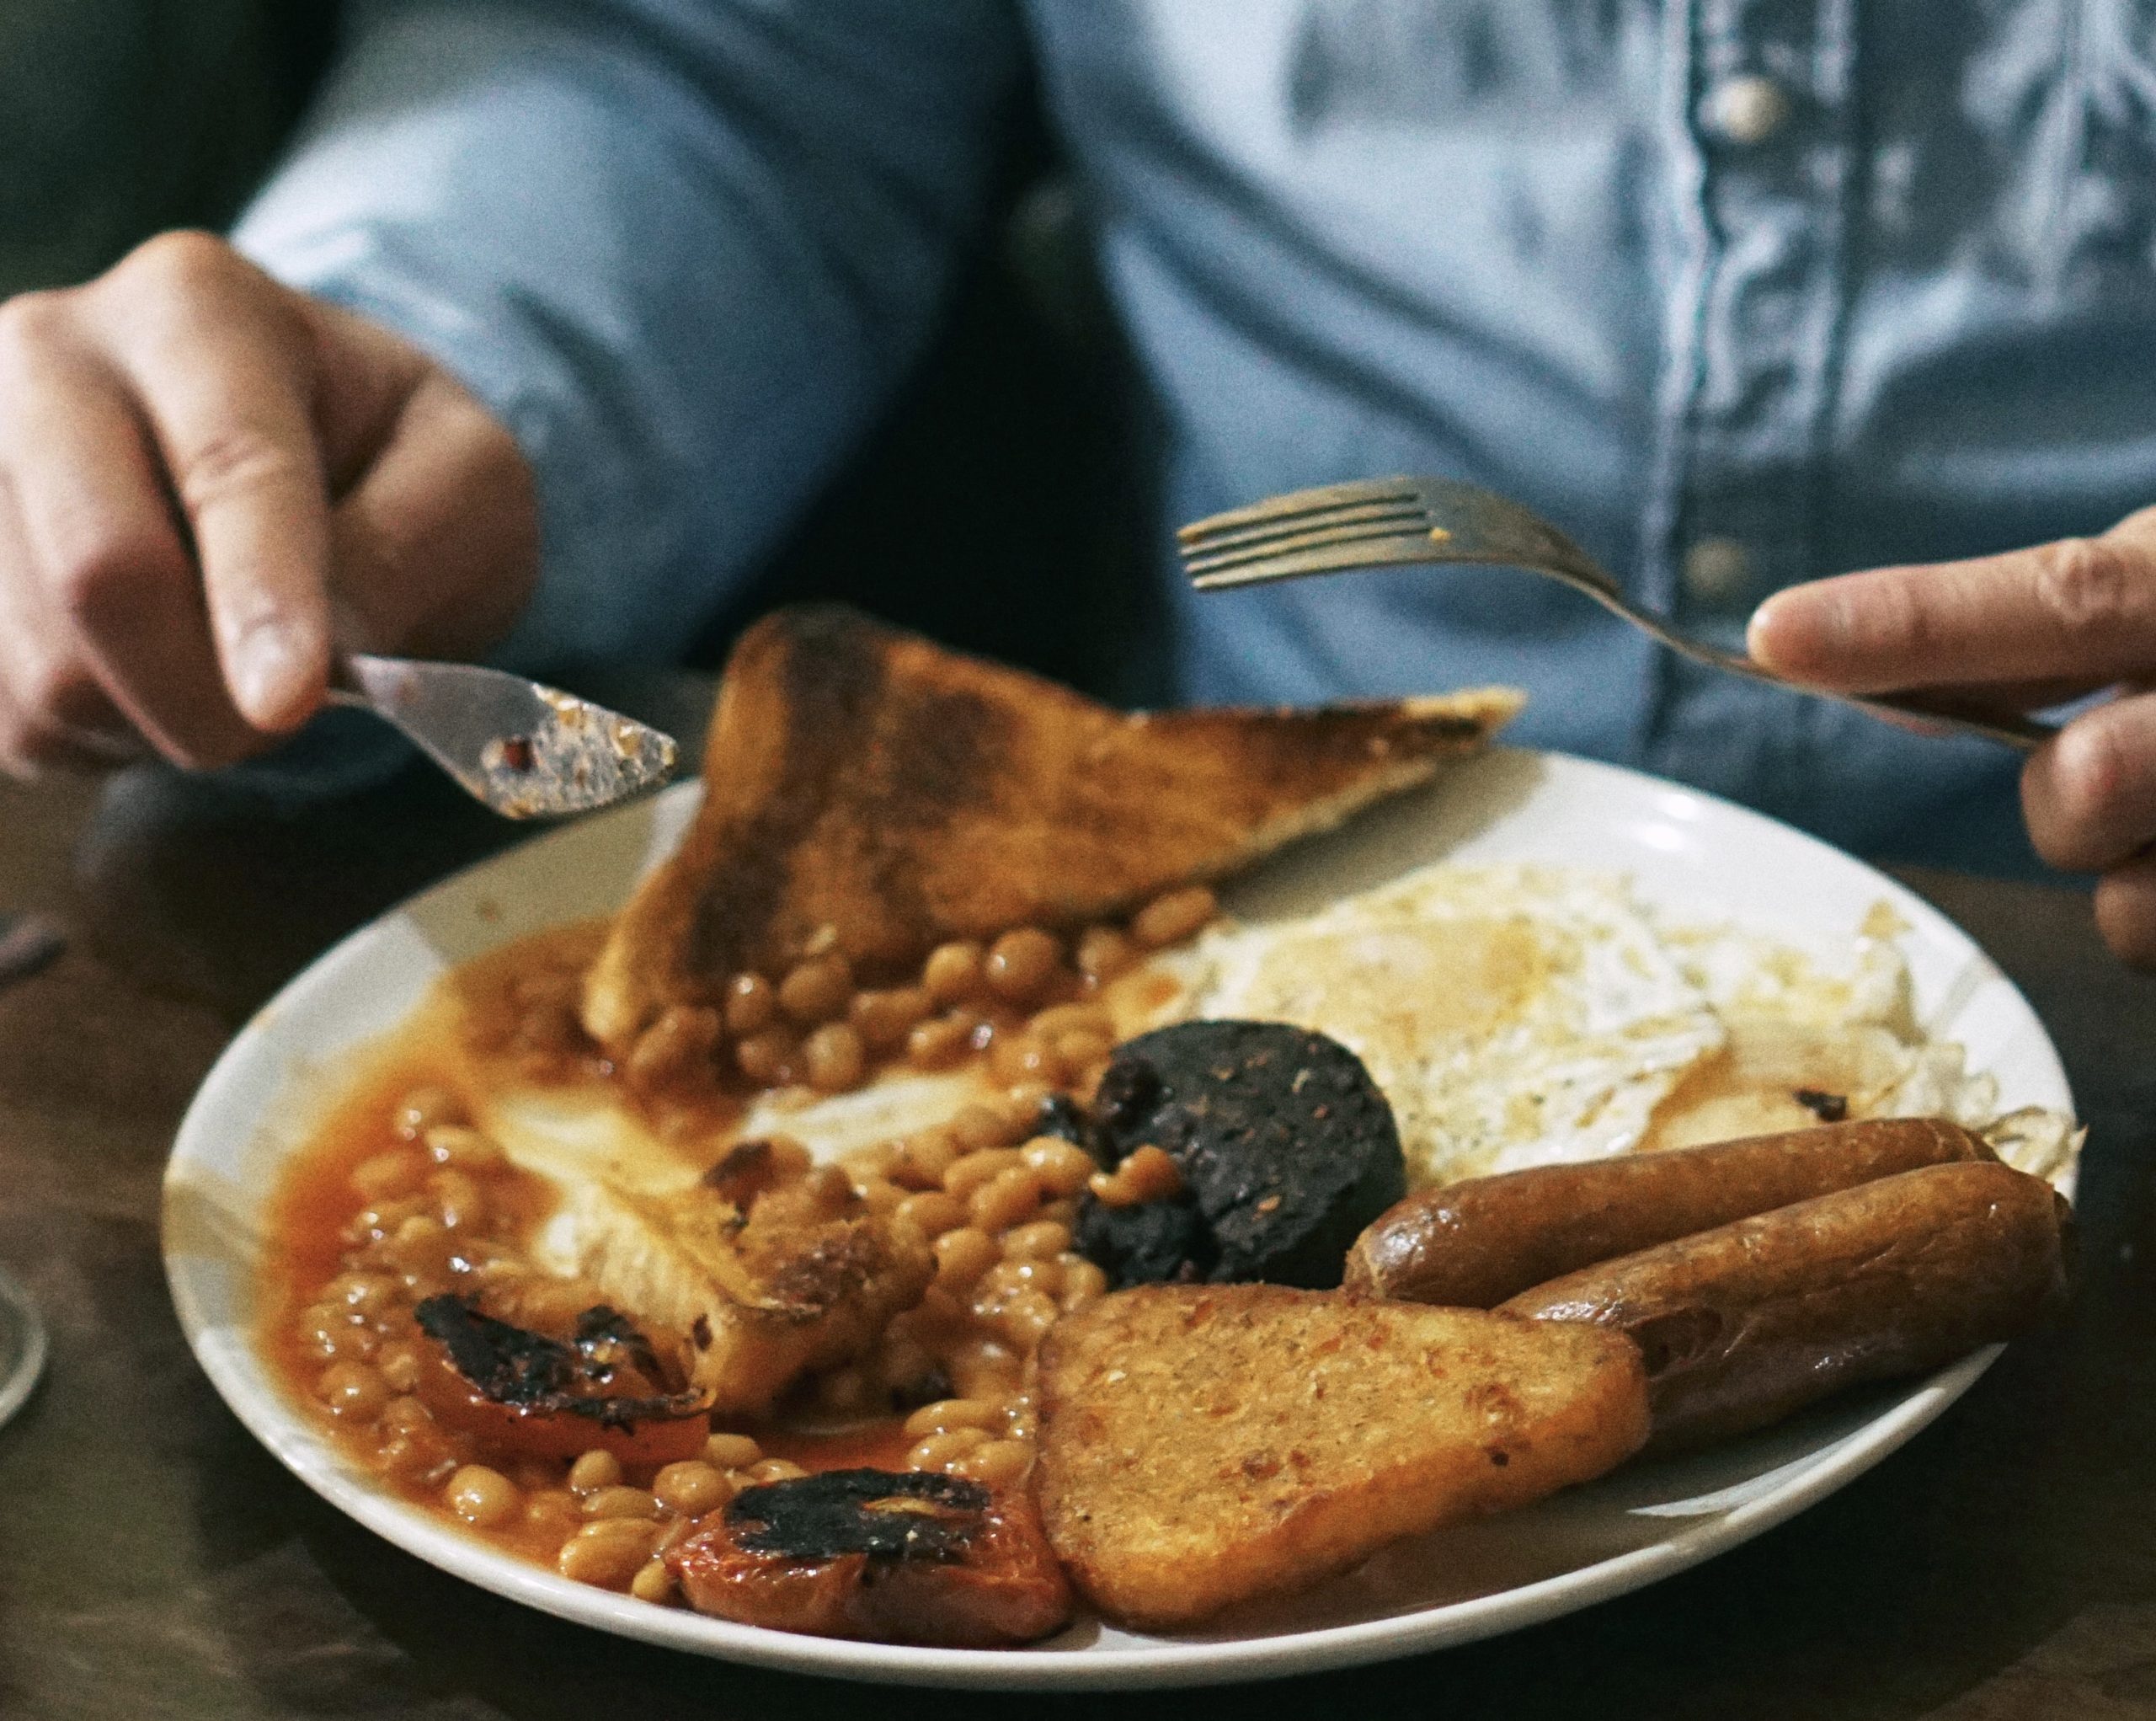 Recreating British Meals in America: British Expat Life #fullenglishbreakfast #sundayroastdinner #sausagerolls #fishandchips #bangersandmash #steakandkidneypie